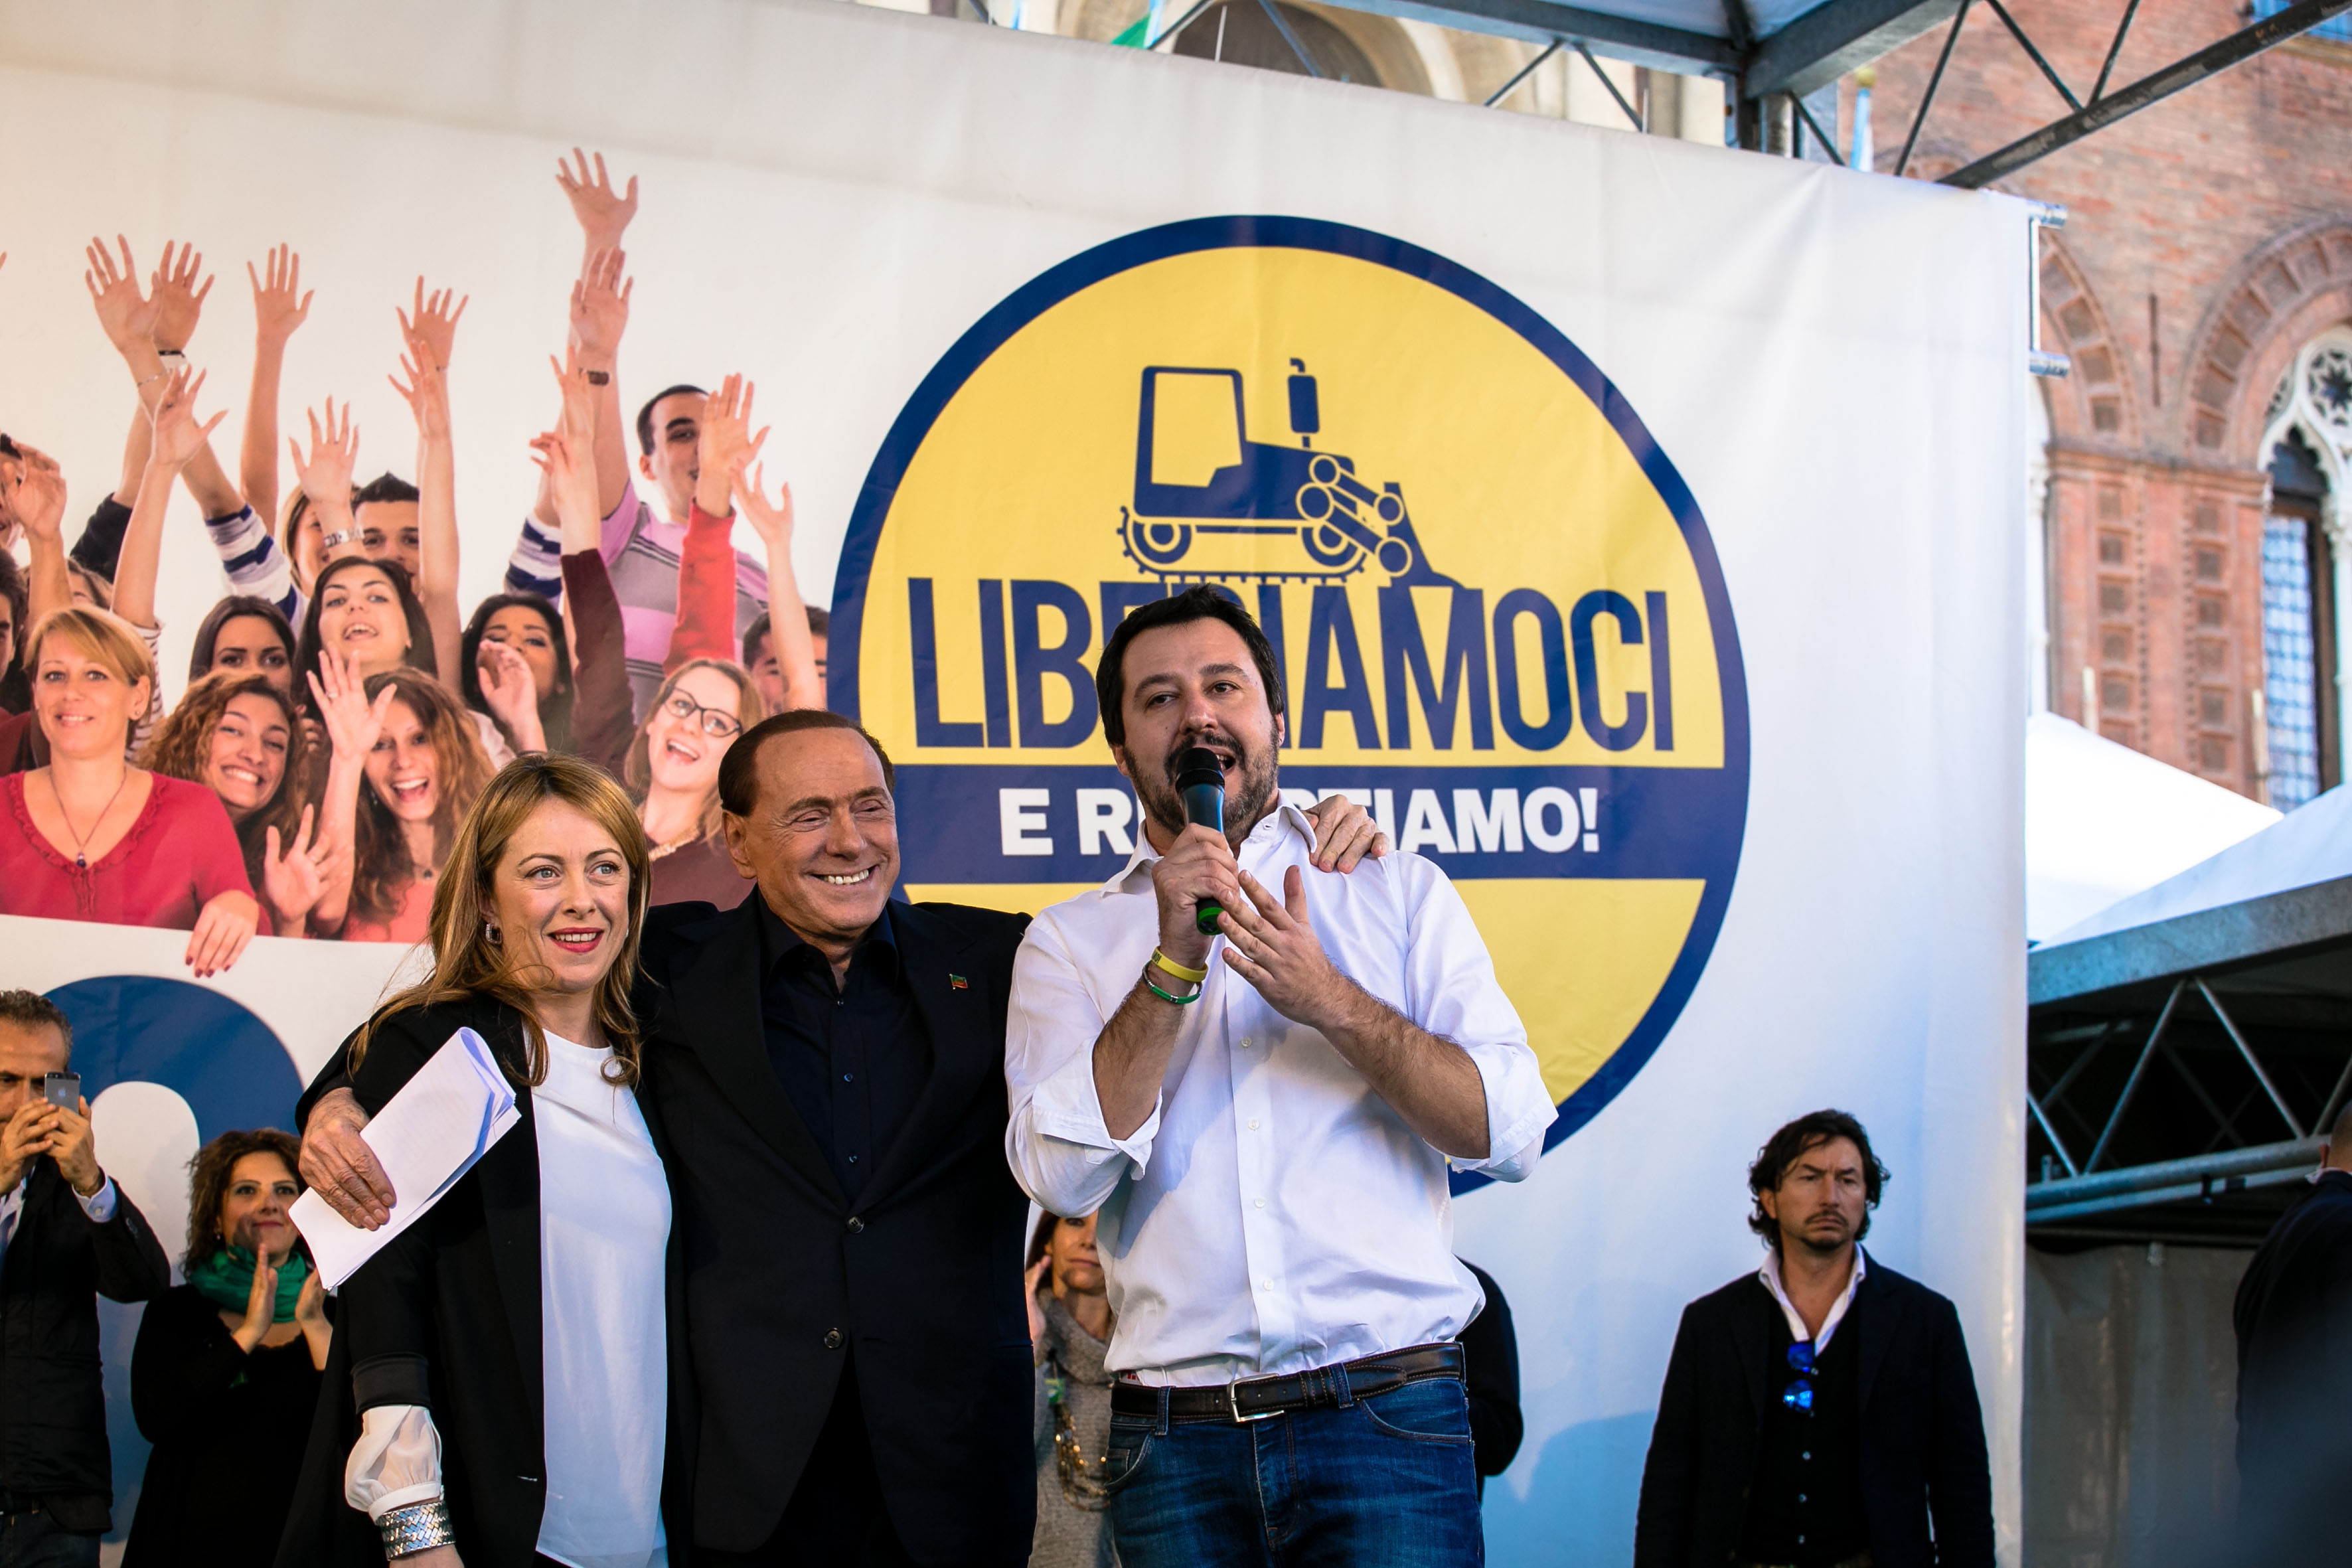 Giorgia Meloni, Silvio Berlusconi e Matteo Salvini, leader dei maggiori partiti del centrodestra (Fratelli d'italia, Forza Italia e Lega).